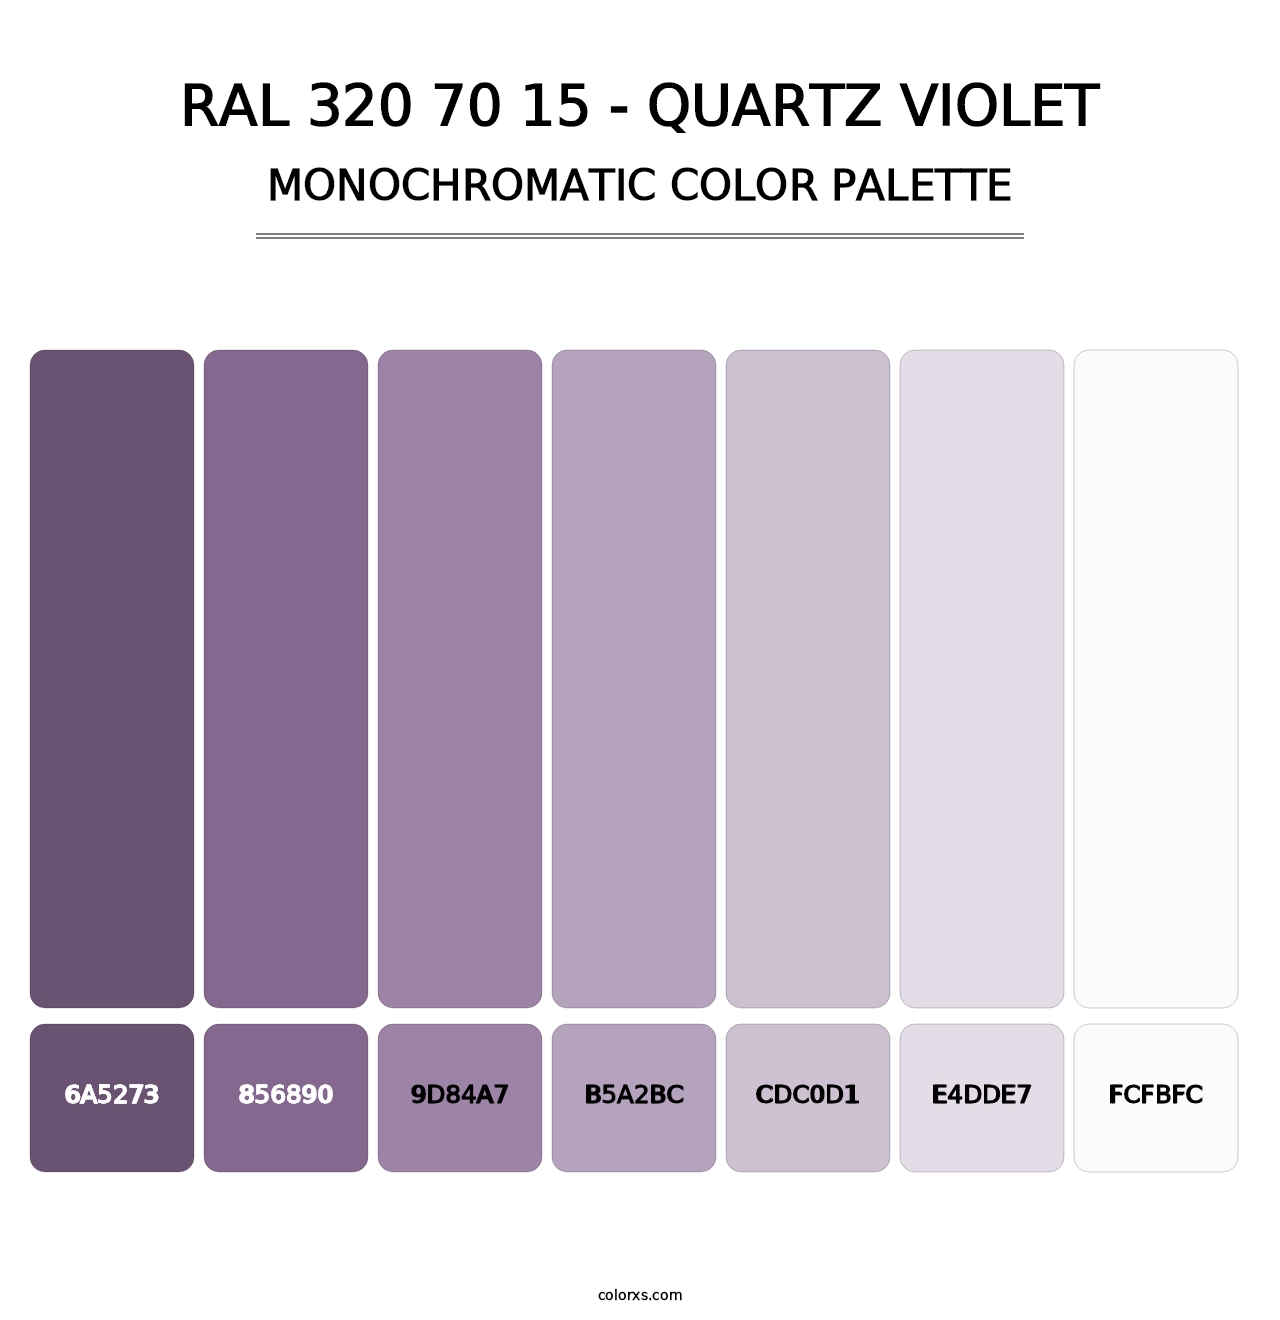 RAL 320 70 15 - Quartz Violet - Monochromatic Color Palette